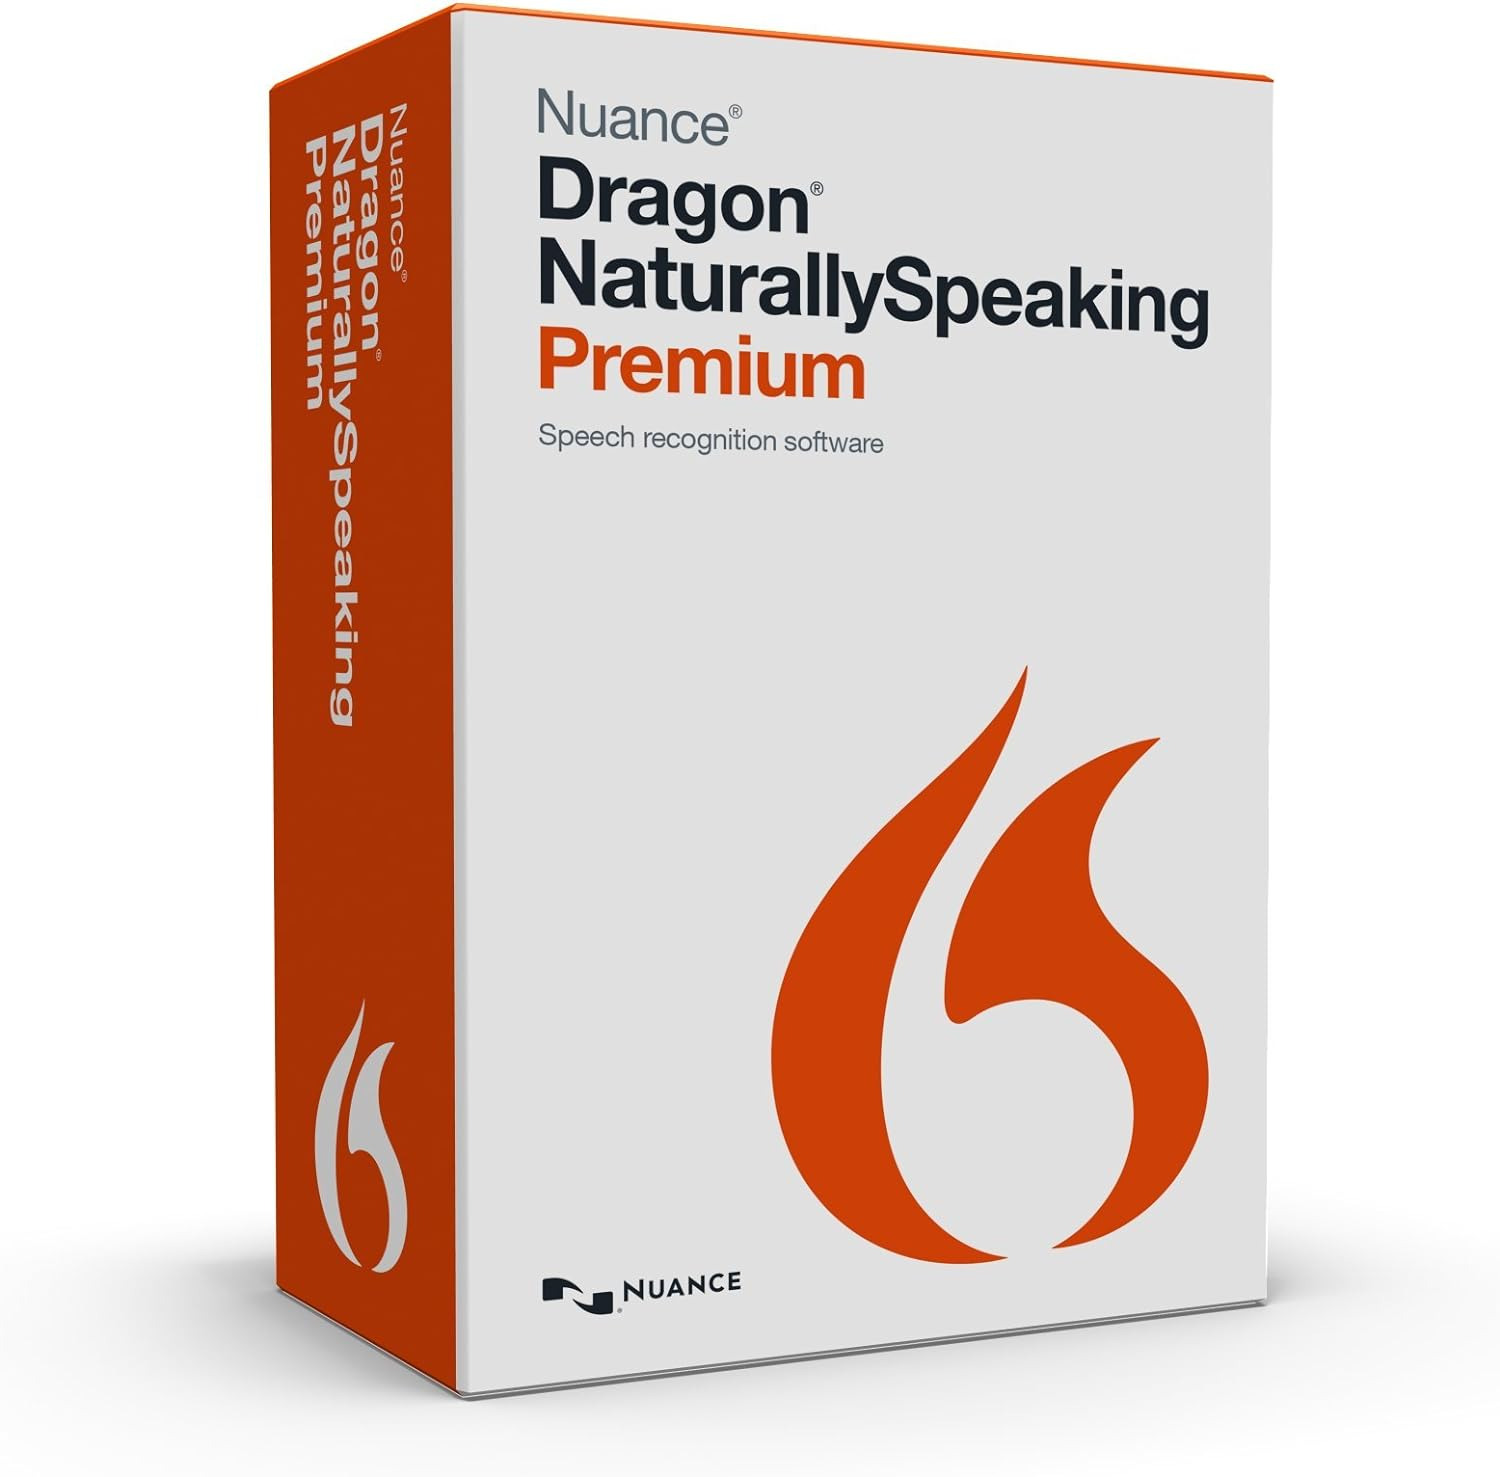 Dragon Naturallyspeaking Premium 13 (Discontinued)